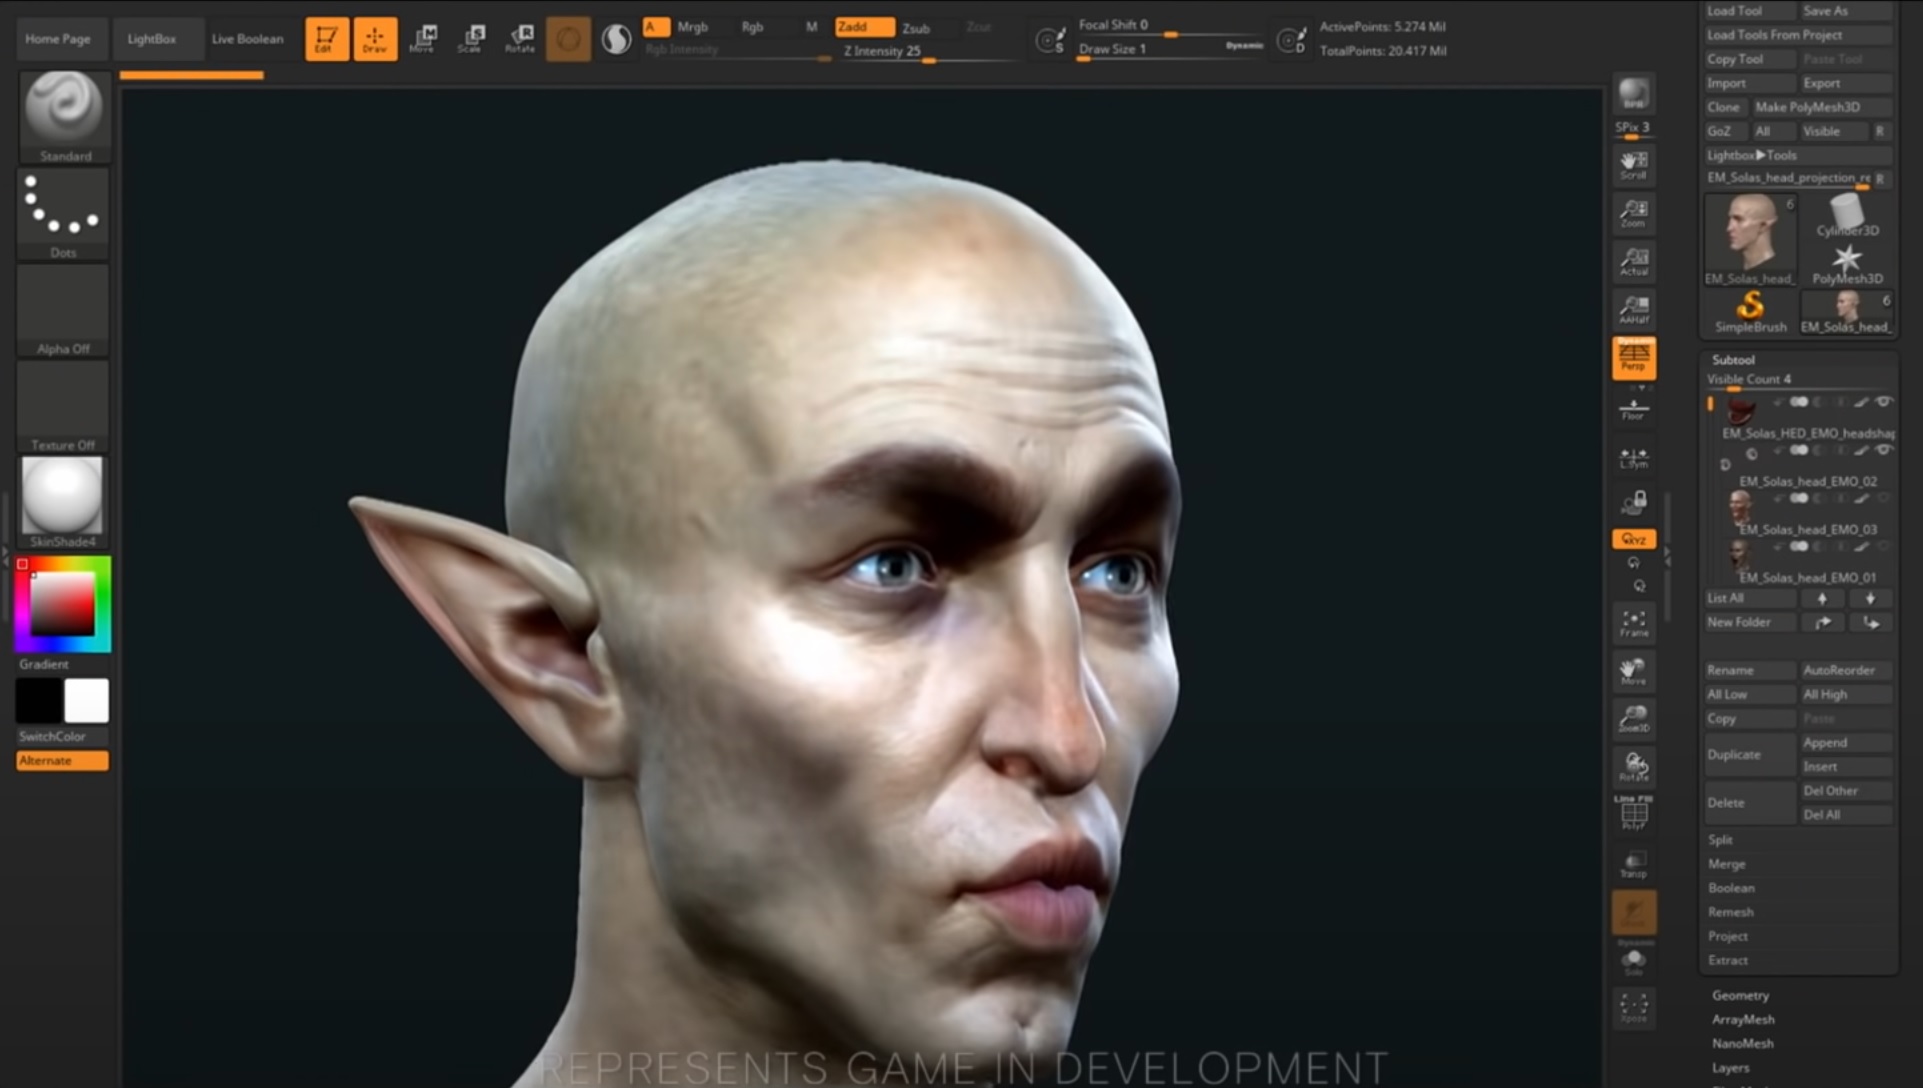 Dragon Age: Dreadwolf - Solas'ın yüzünün modellenmekte, öpüşen bir surat yapmak için geliştirilmekte olan bir ekran görüntüsü.